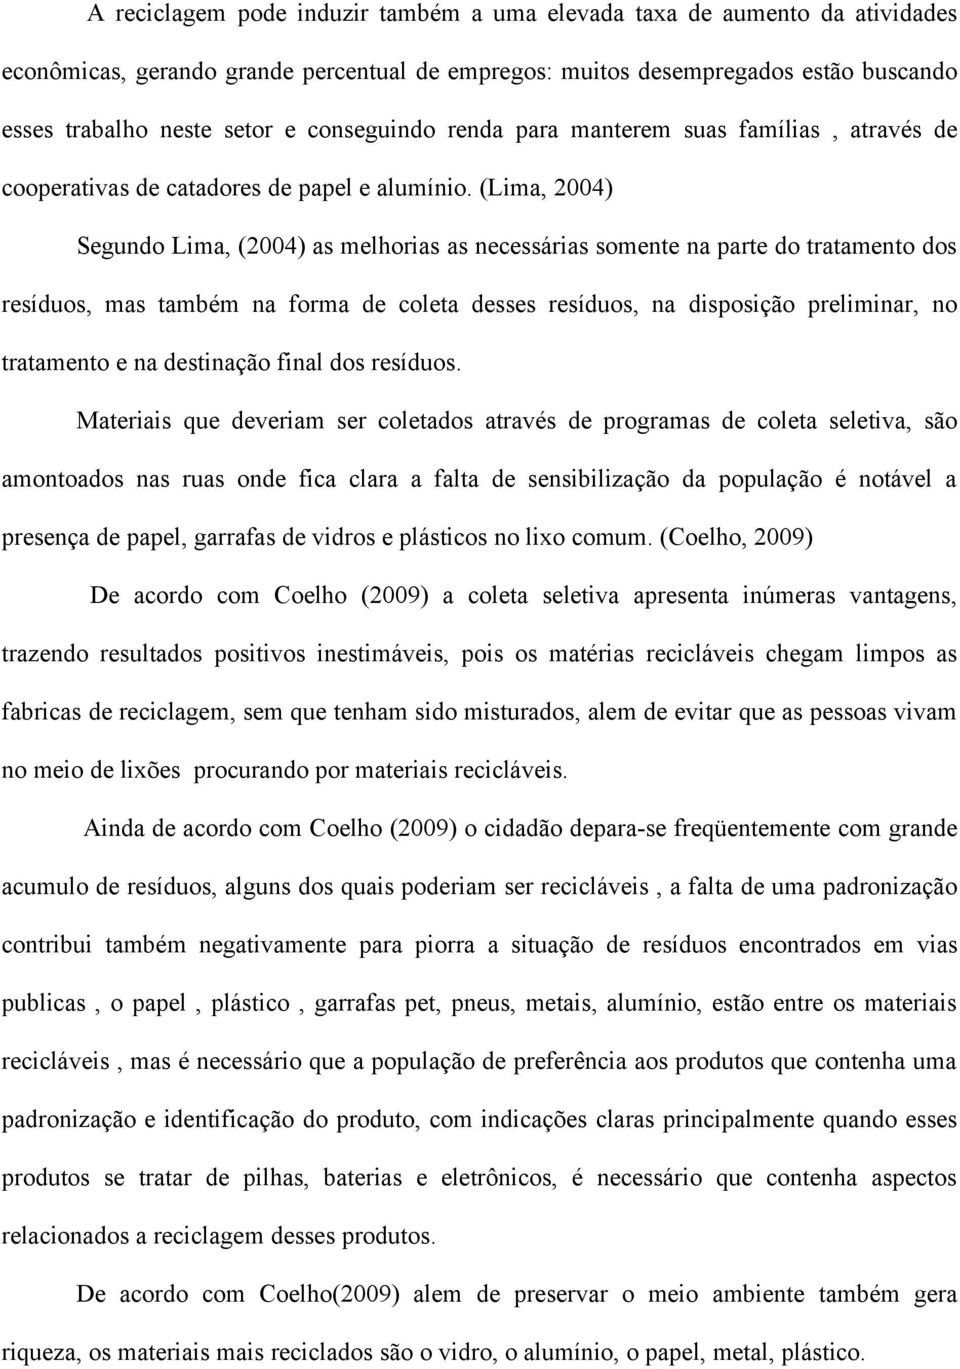 (Lima, 2004) Segundo Lima, (2004) as melhorias as necessárias somente na parte do tratamento dos resíduos, mas também na forma de coleta desses resíduos, na disposição preliminar, no tratamento e na